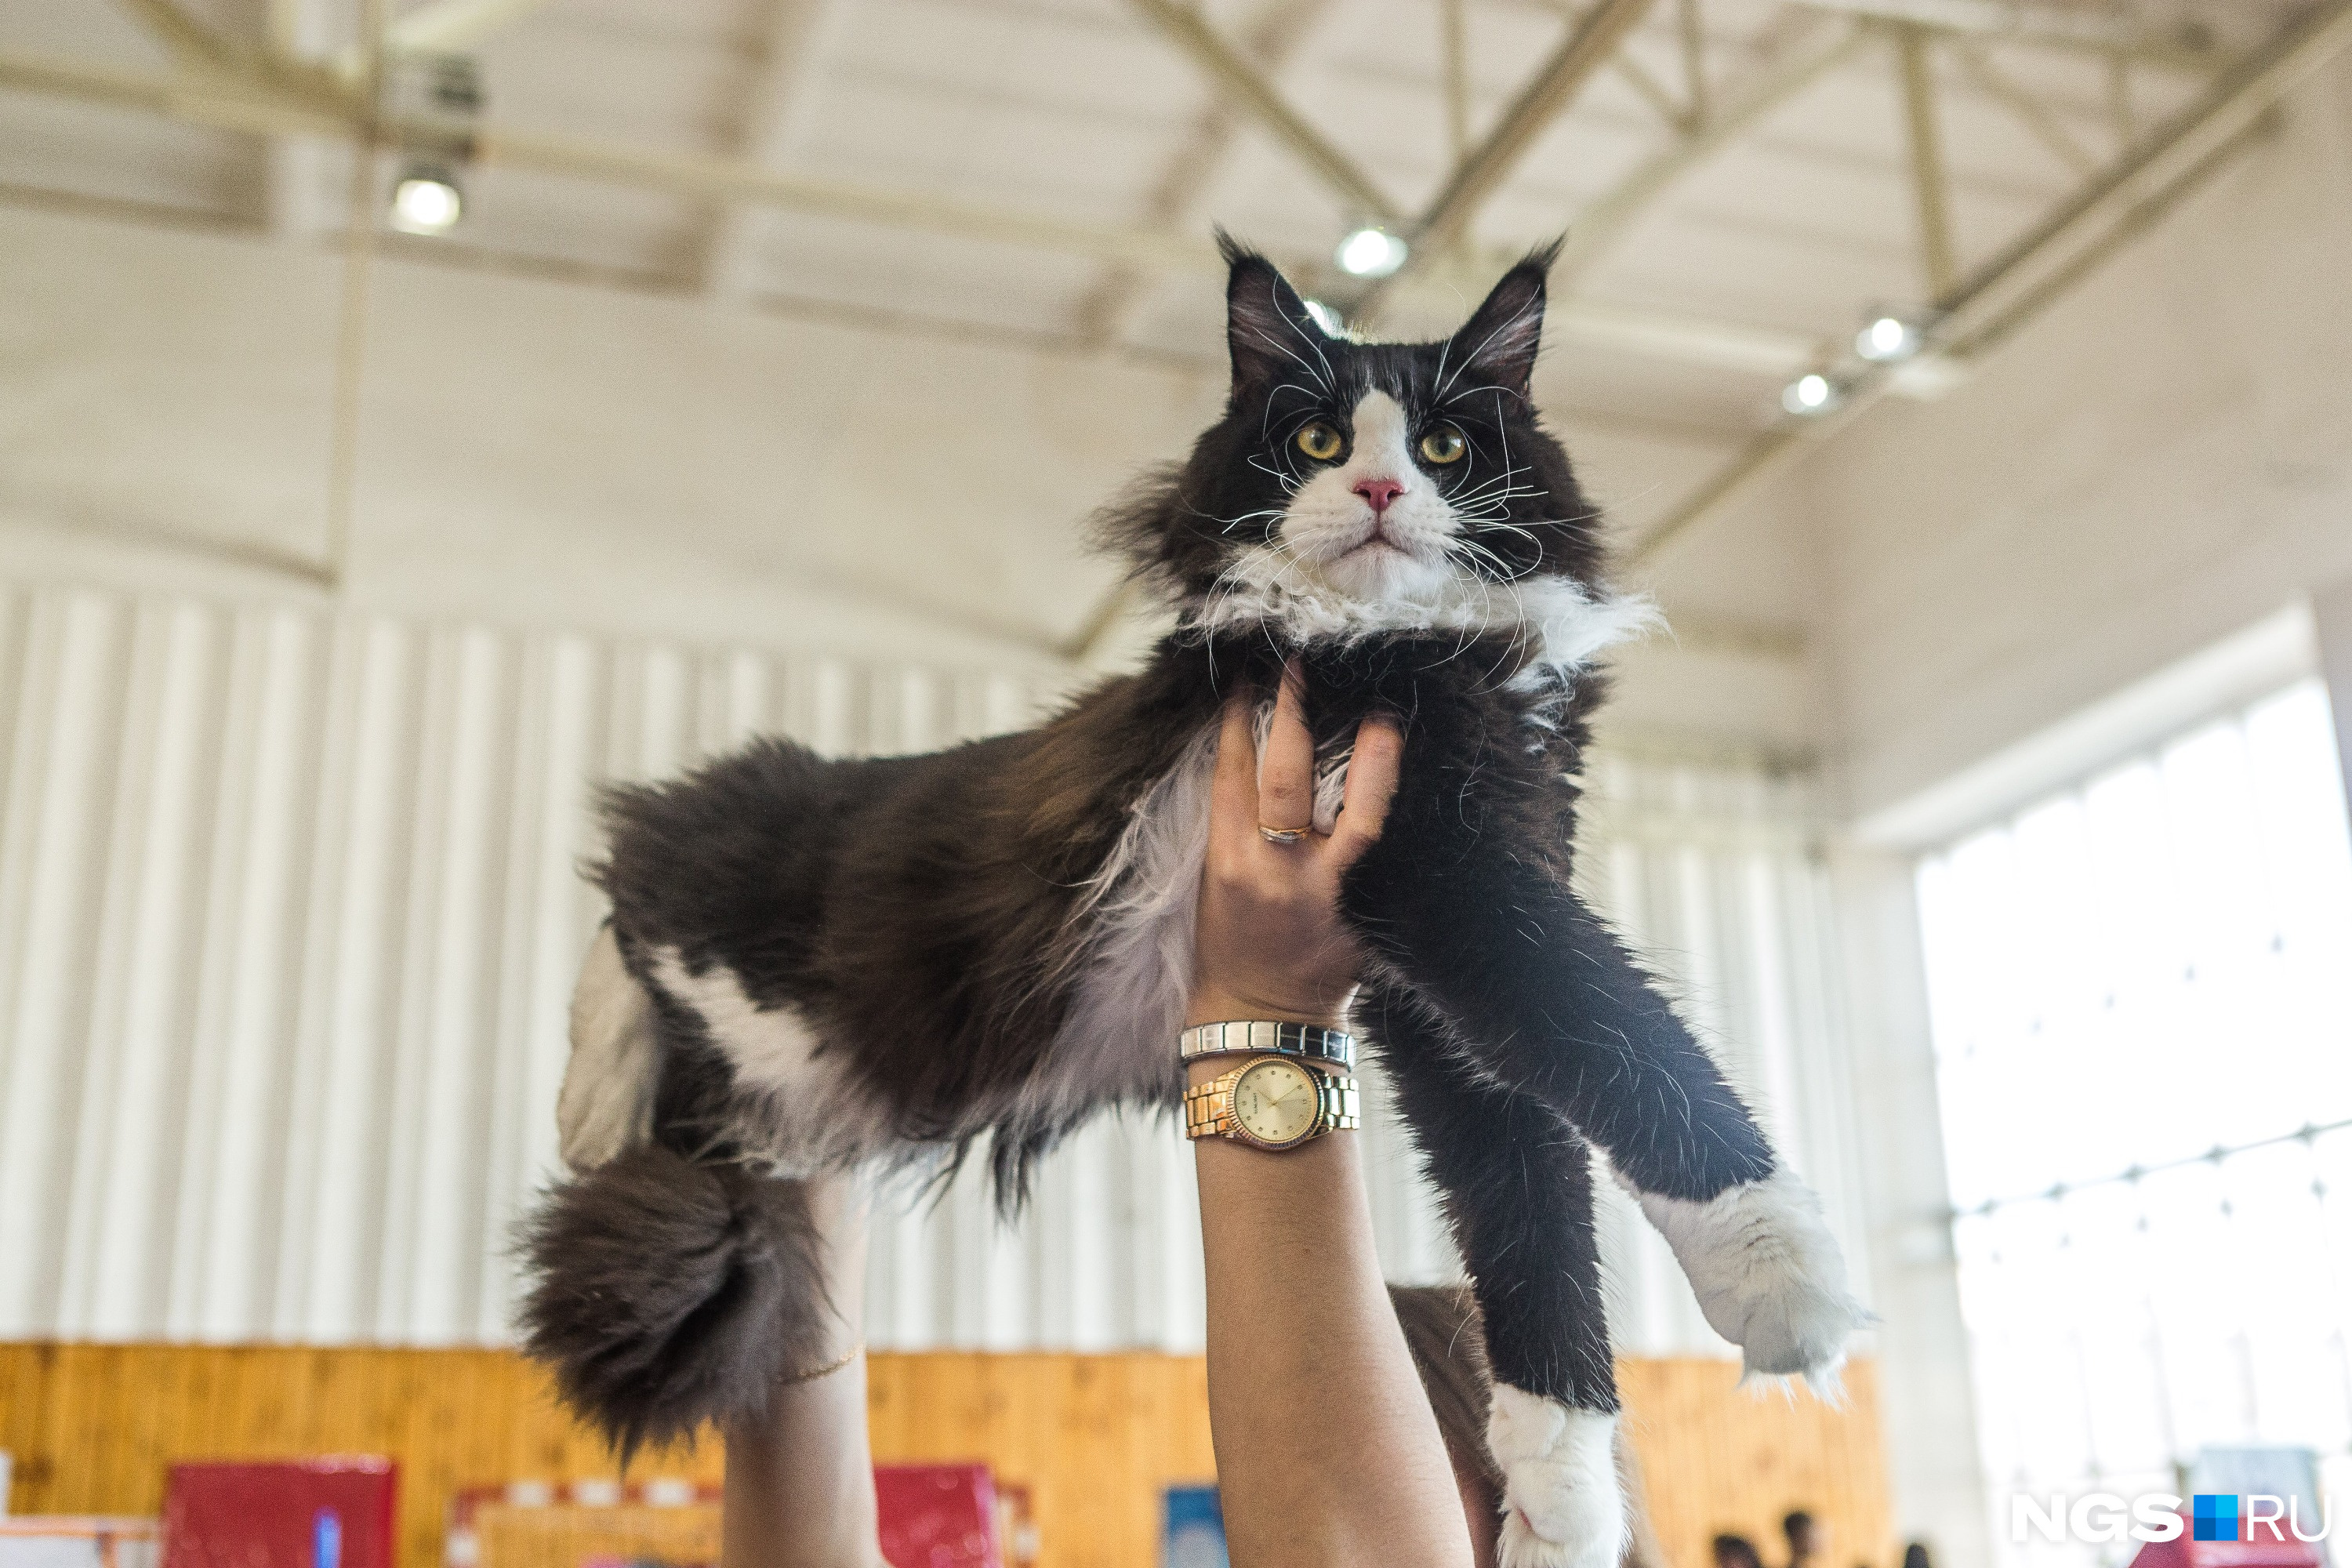 Выставочный кот породы мейн-кун приехал из Омска 